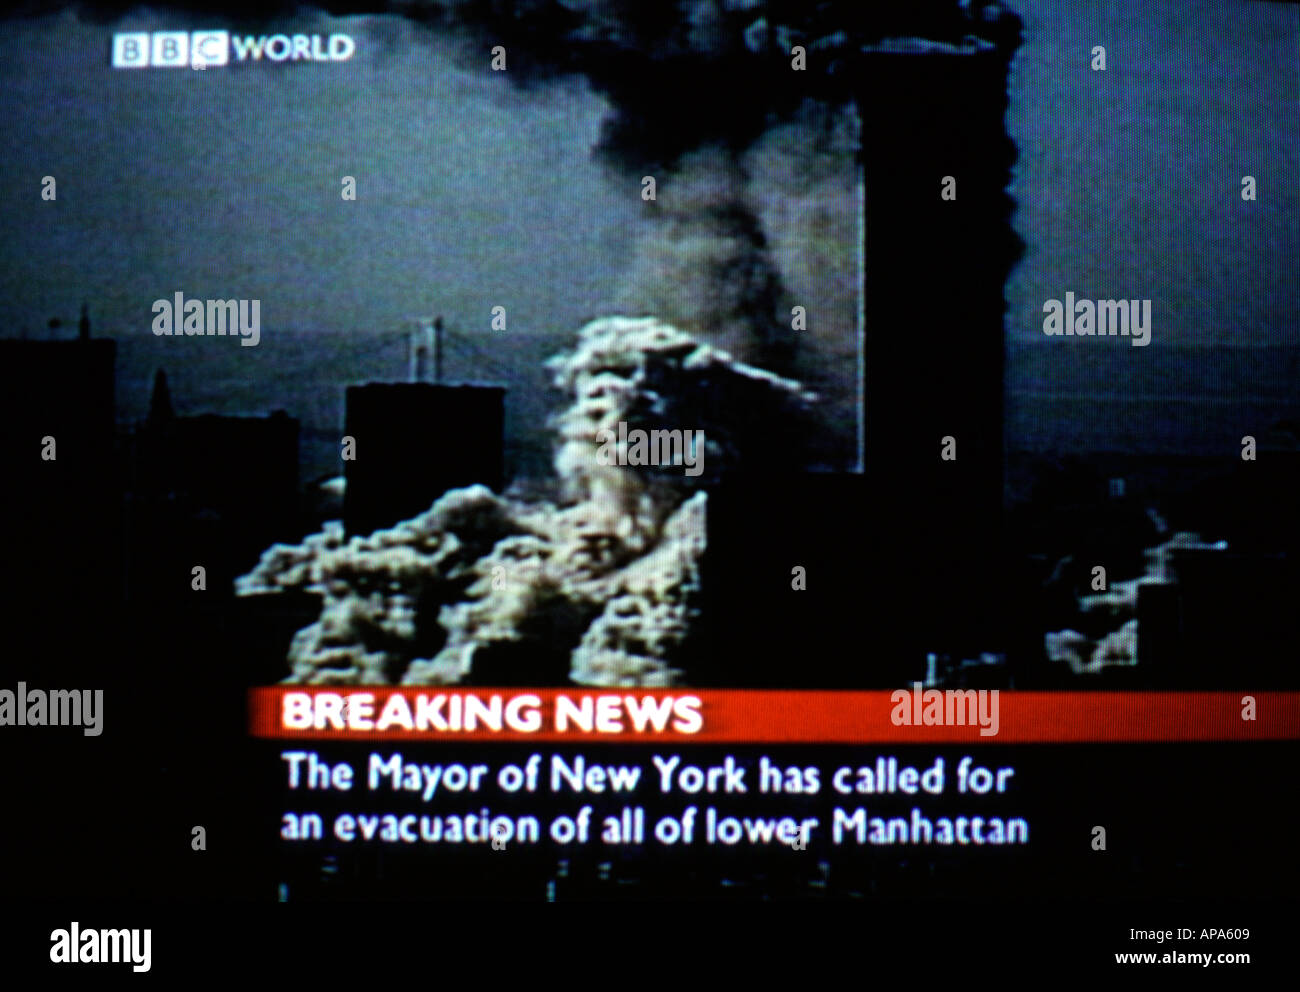 Capture d'écran de la couverture en direct de la BBC des événements qui se déroulent à New York en 9/11, au cours desquels des avions piratés se sont écrasé dans les tours jumelles le 2001 septembre Banque D'Images